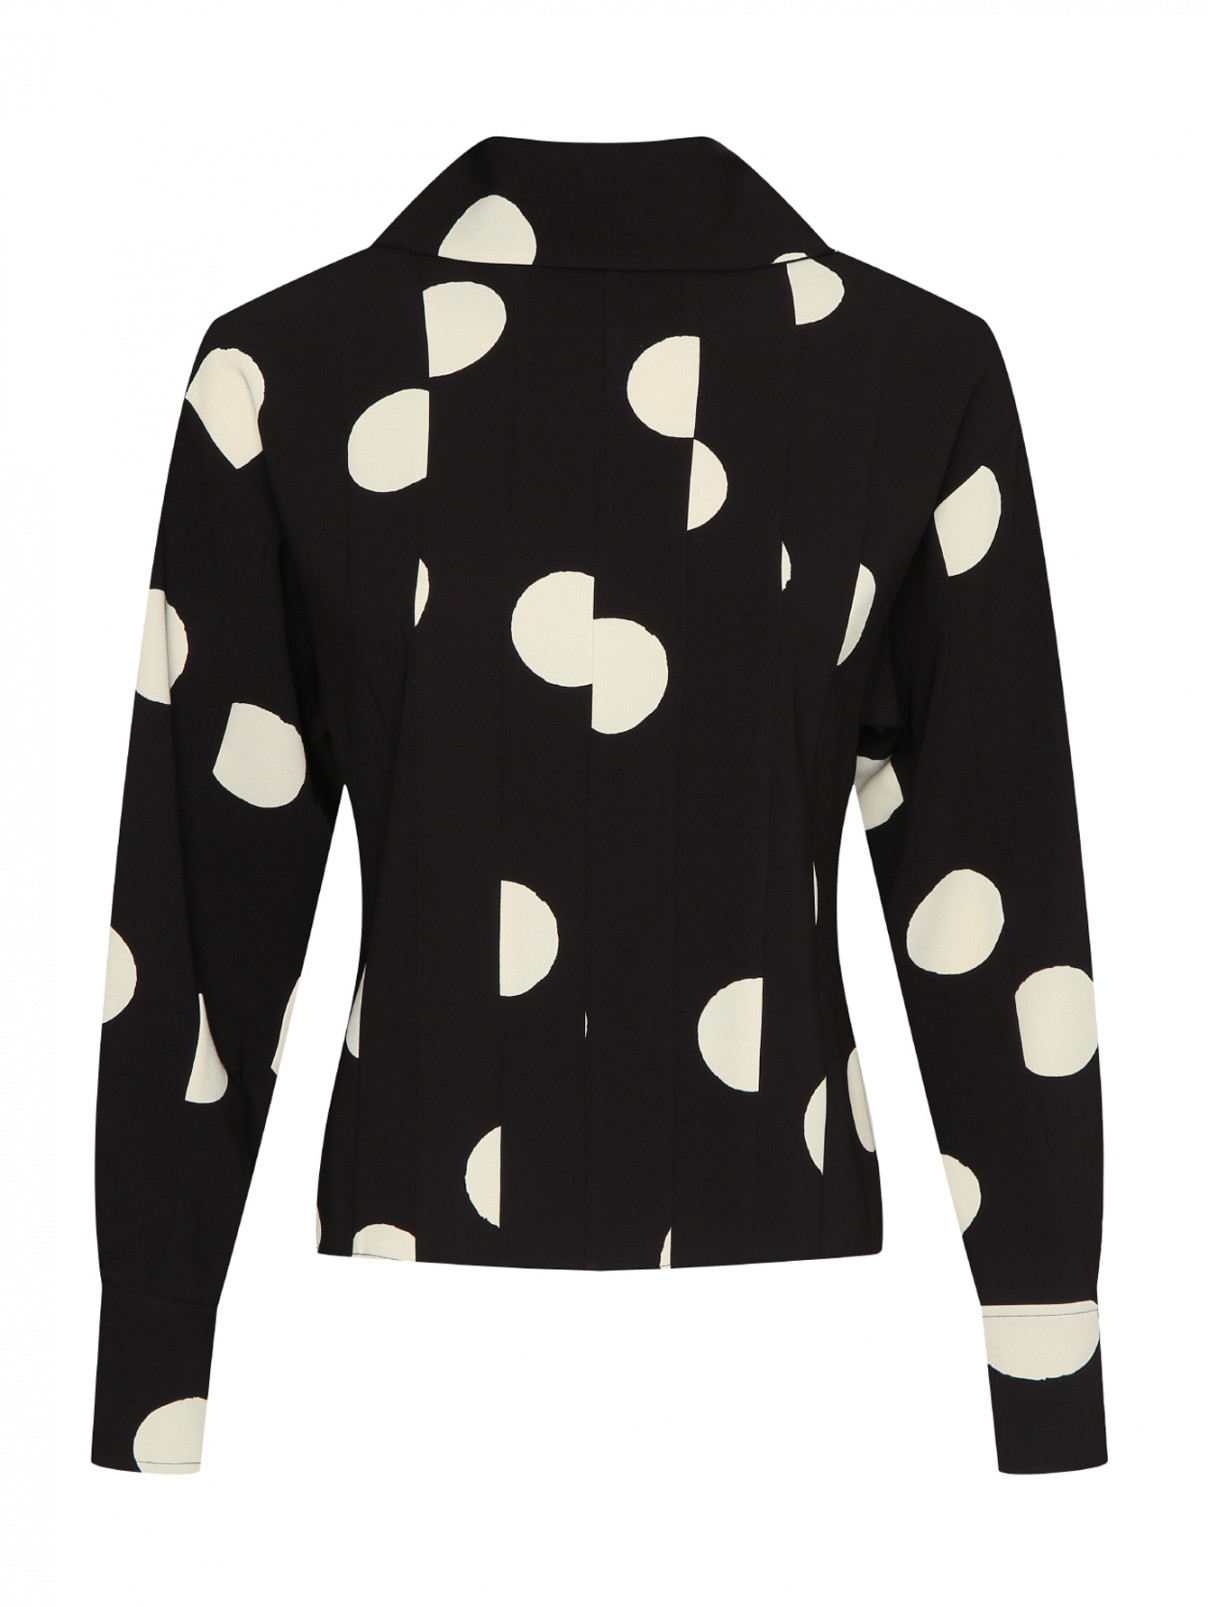 Блуза с узором в горох Proenza Schouler  –  Общий вид  – Цвет:  Черный